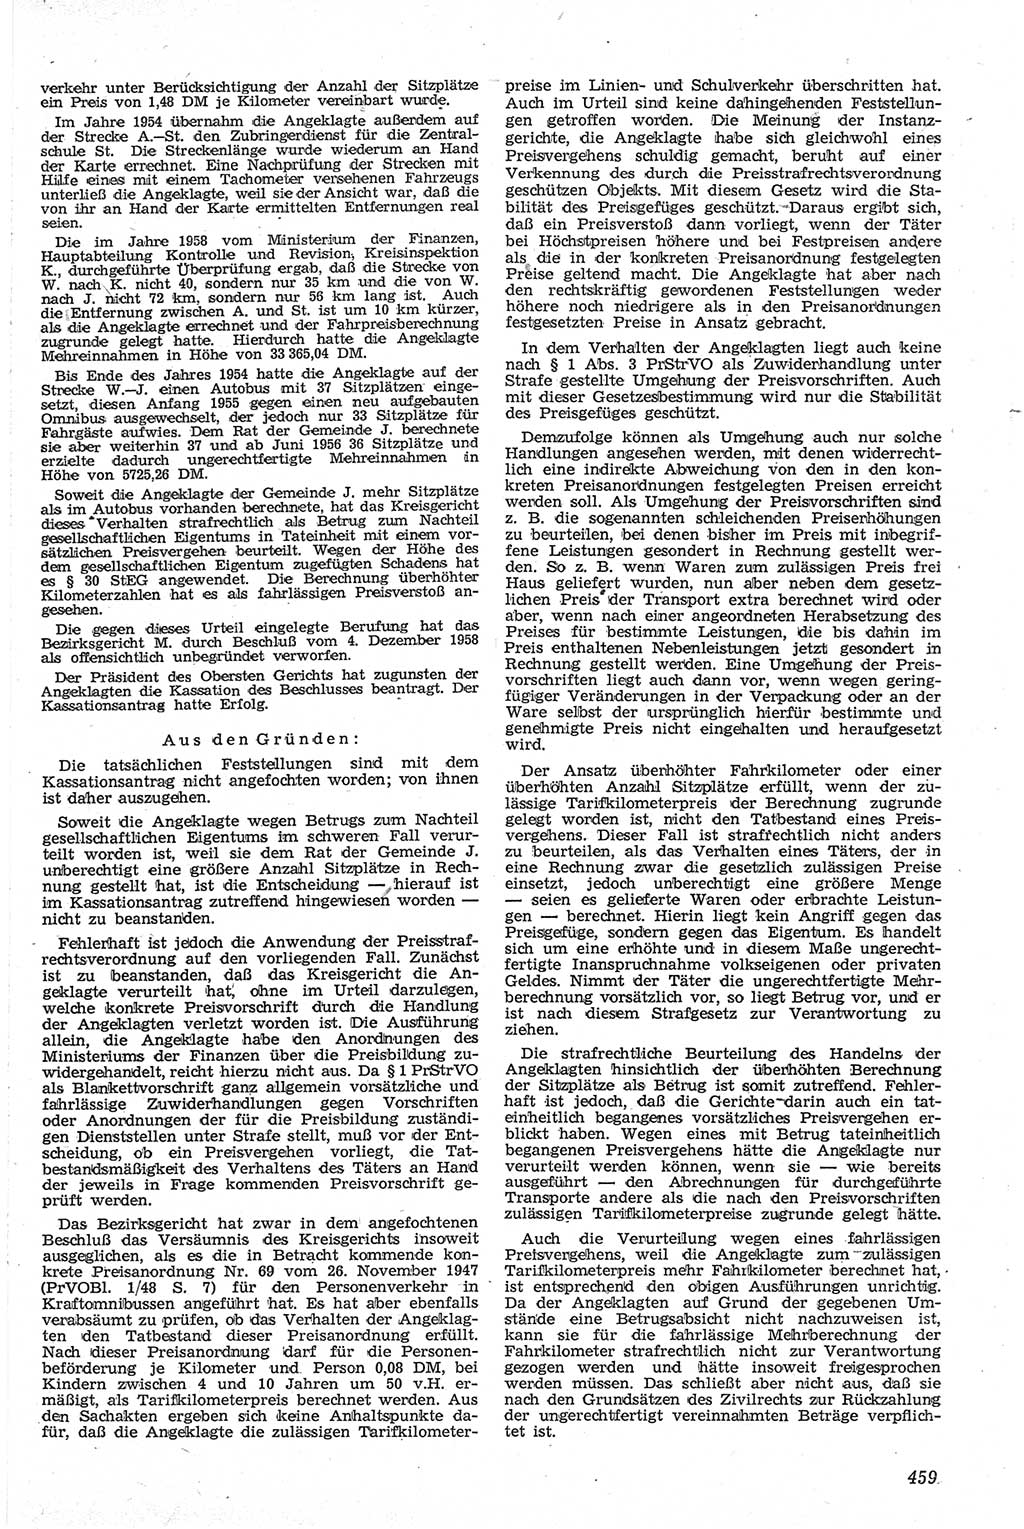 Neue Justiz (NJ), Zeitschrift für Recht und Rechtswissenschaft [Deutsche Demokratische Republik (DDR)], 13. Jahrgang 1959, Seite 459 (NJ DDR 1959, S. 459)